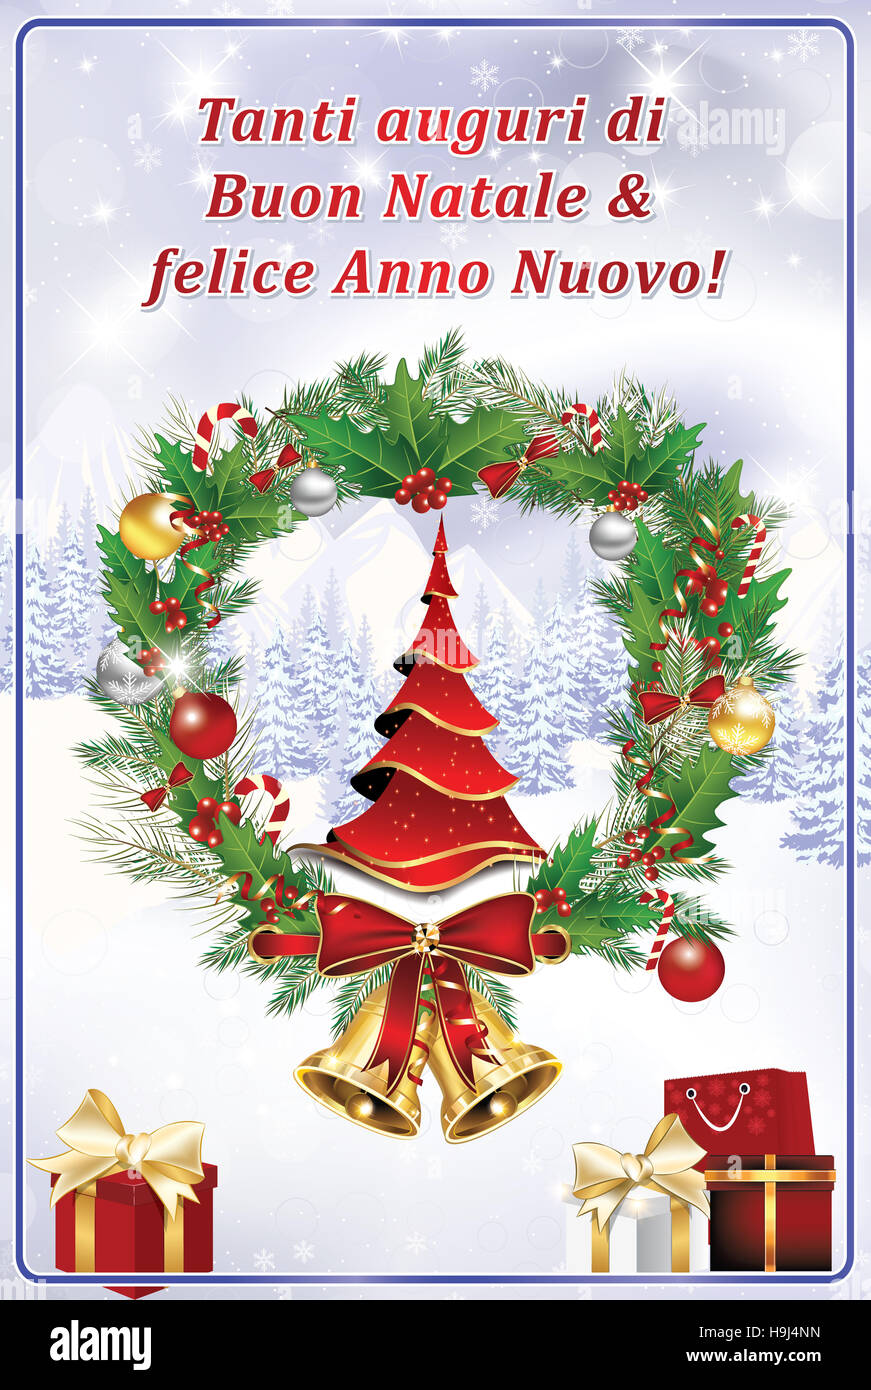 Buon Natale Felice.Tanti Auguri Di Buon Natale Felice Anno Nuovo Biglietto Stock Photo Alamy